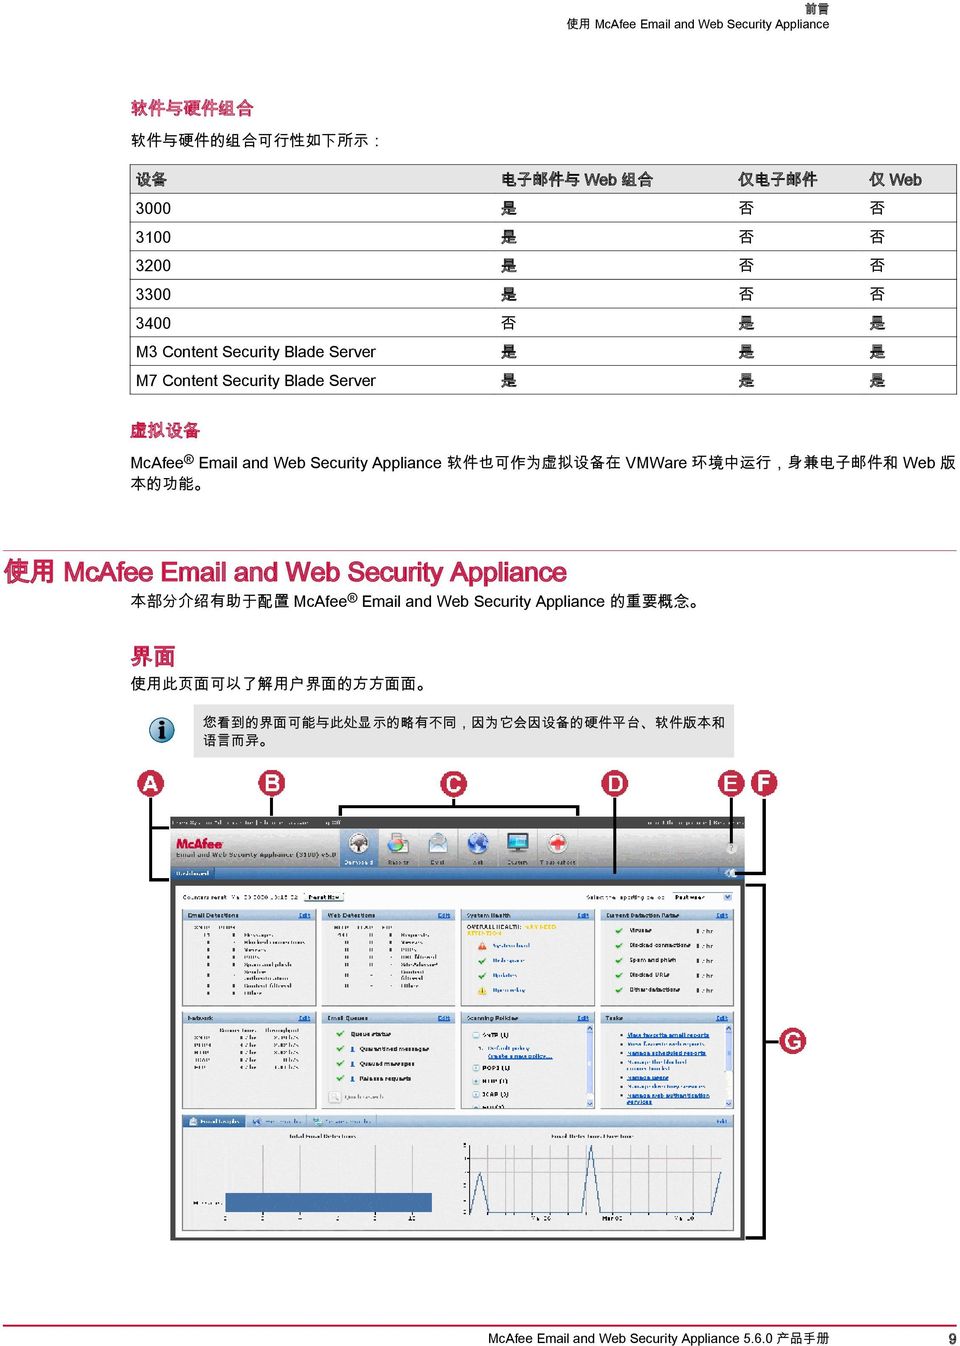 在 VMWare 环 境 中 运 行, 身 兼 电 子 邮 件 和 Web 版 本 的 功 能 使 用 McAfee Email and Web Security Appliance 本 部 分 介 绍 有 助 于 配 置 McAfee Email and Web Security Appliance 的 重 要 概 念 界 面 使